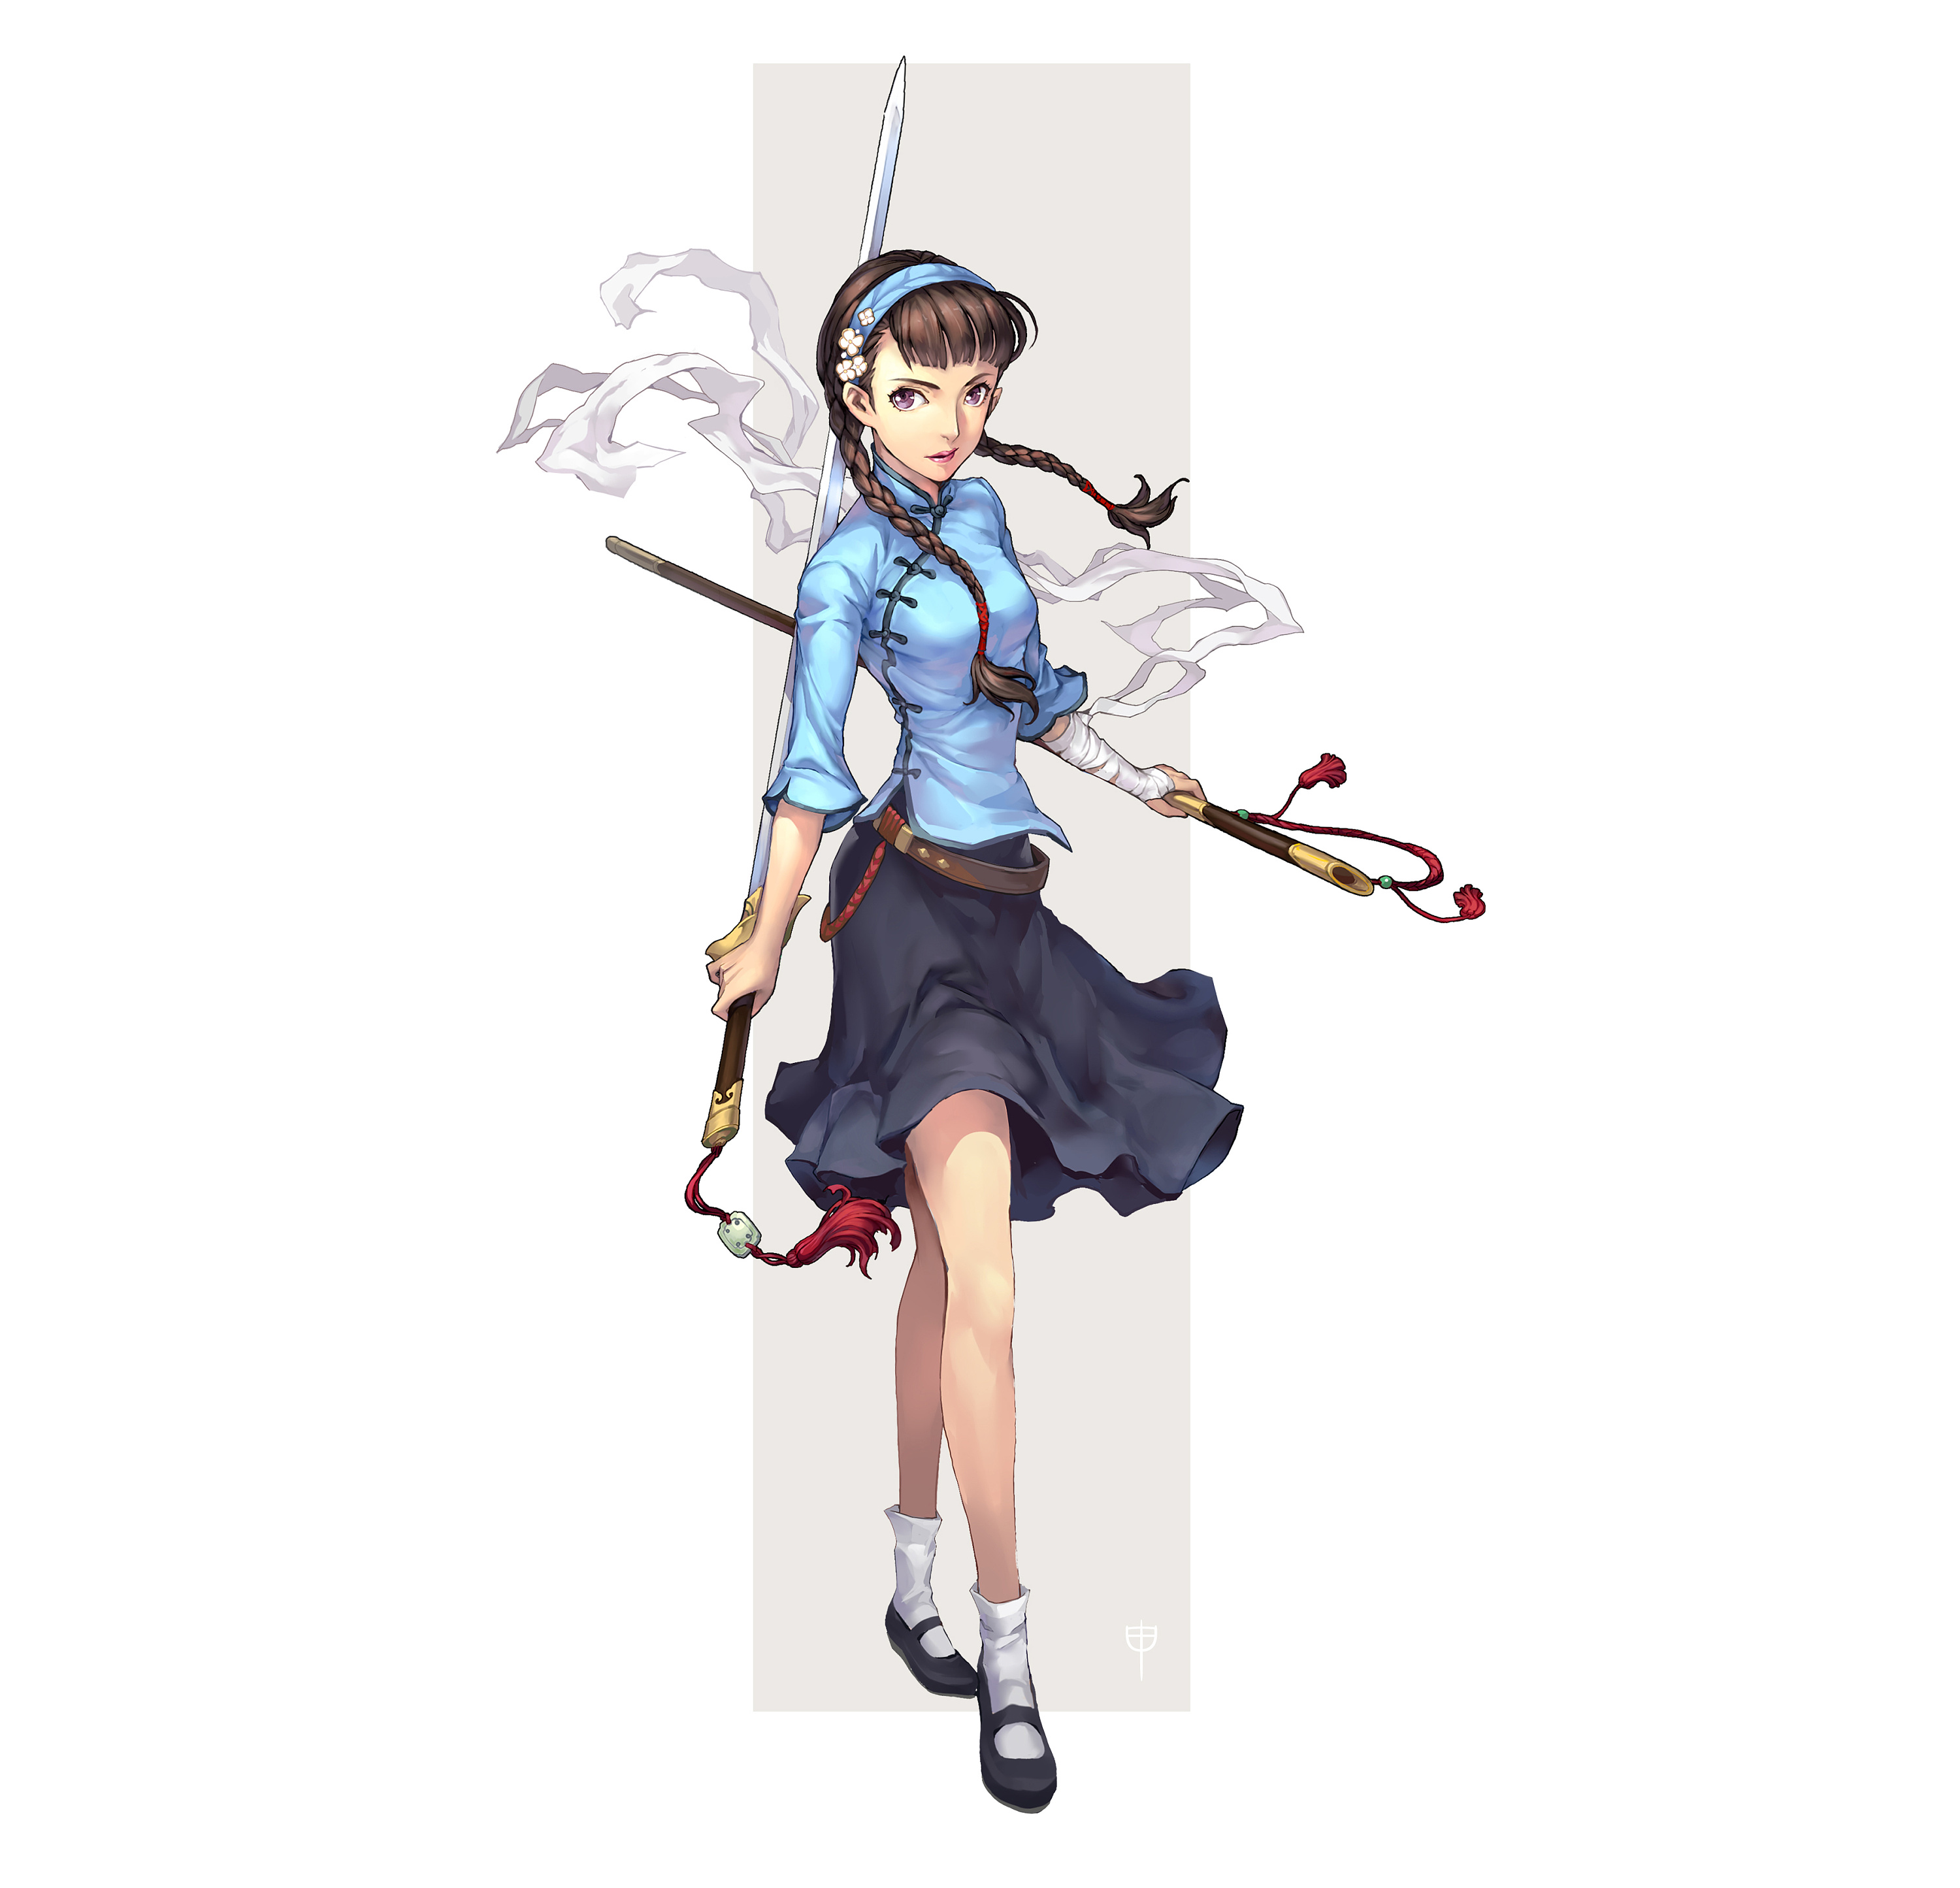 Anime 3000x2890 illustration anime anime girls legs white background sword women with swords